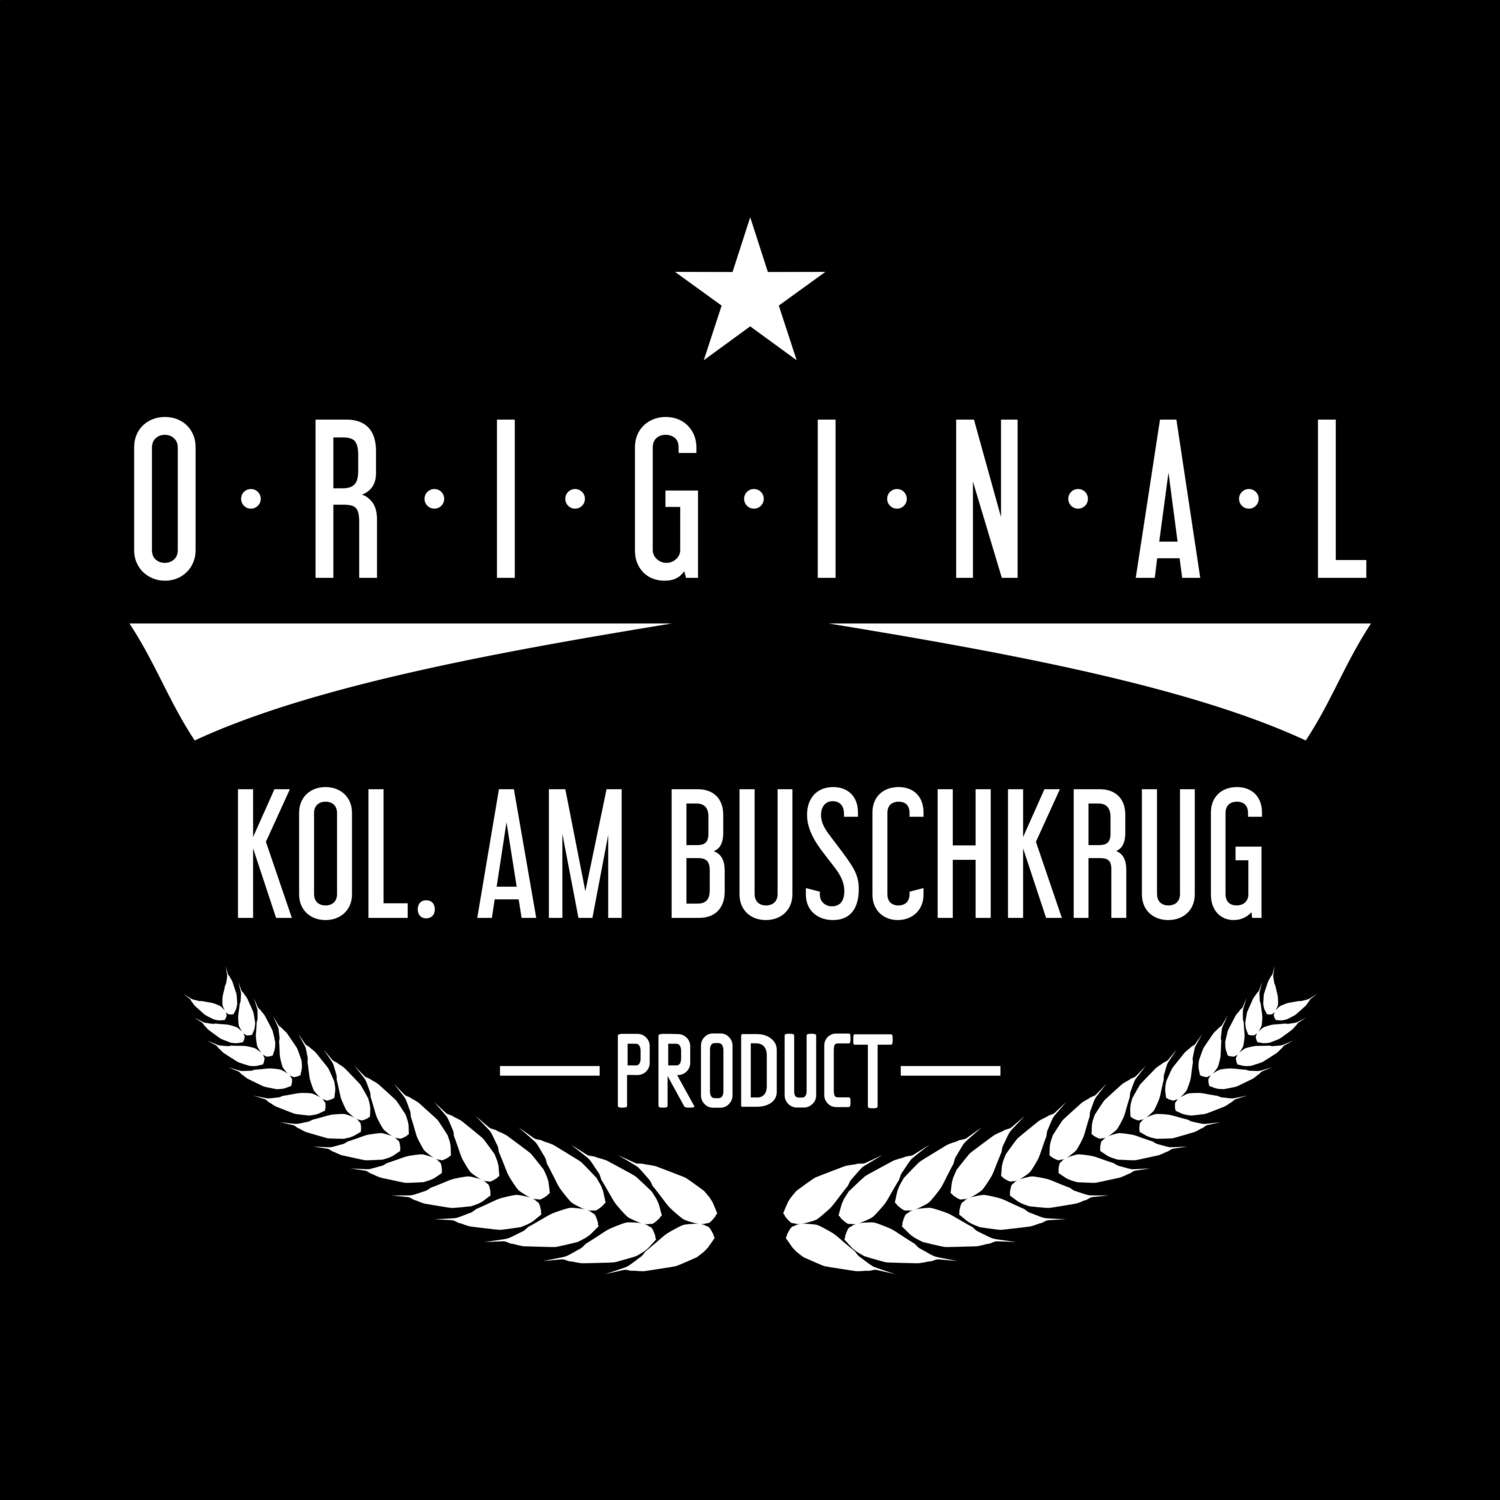 Kol. Am Buschkrug T-Shirt »Original Product«